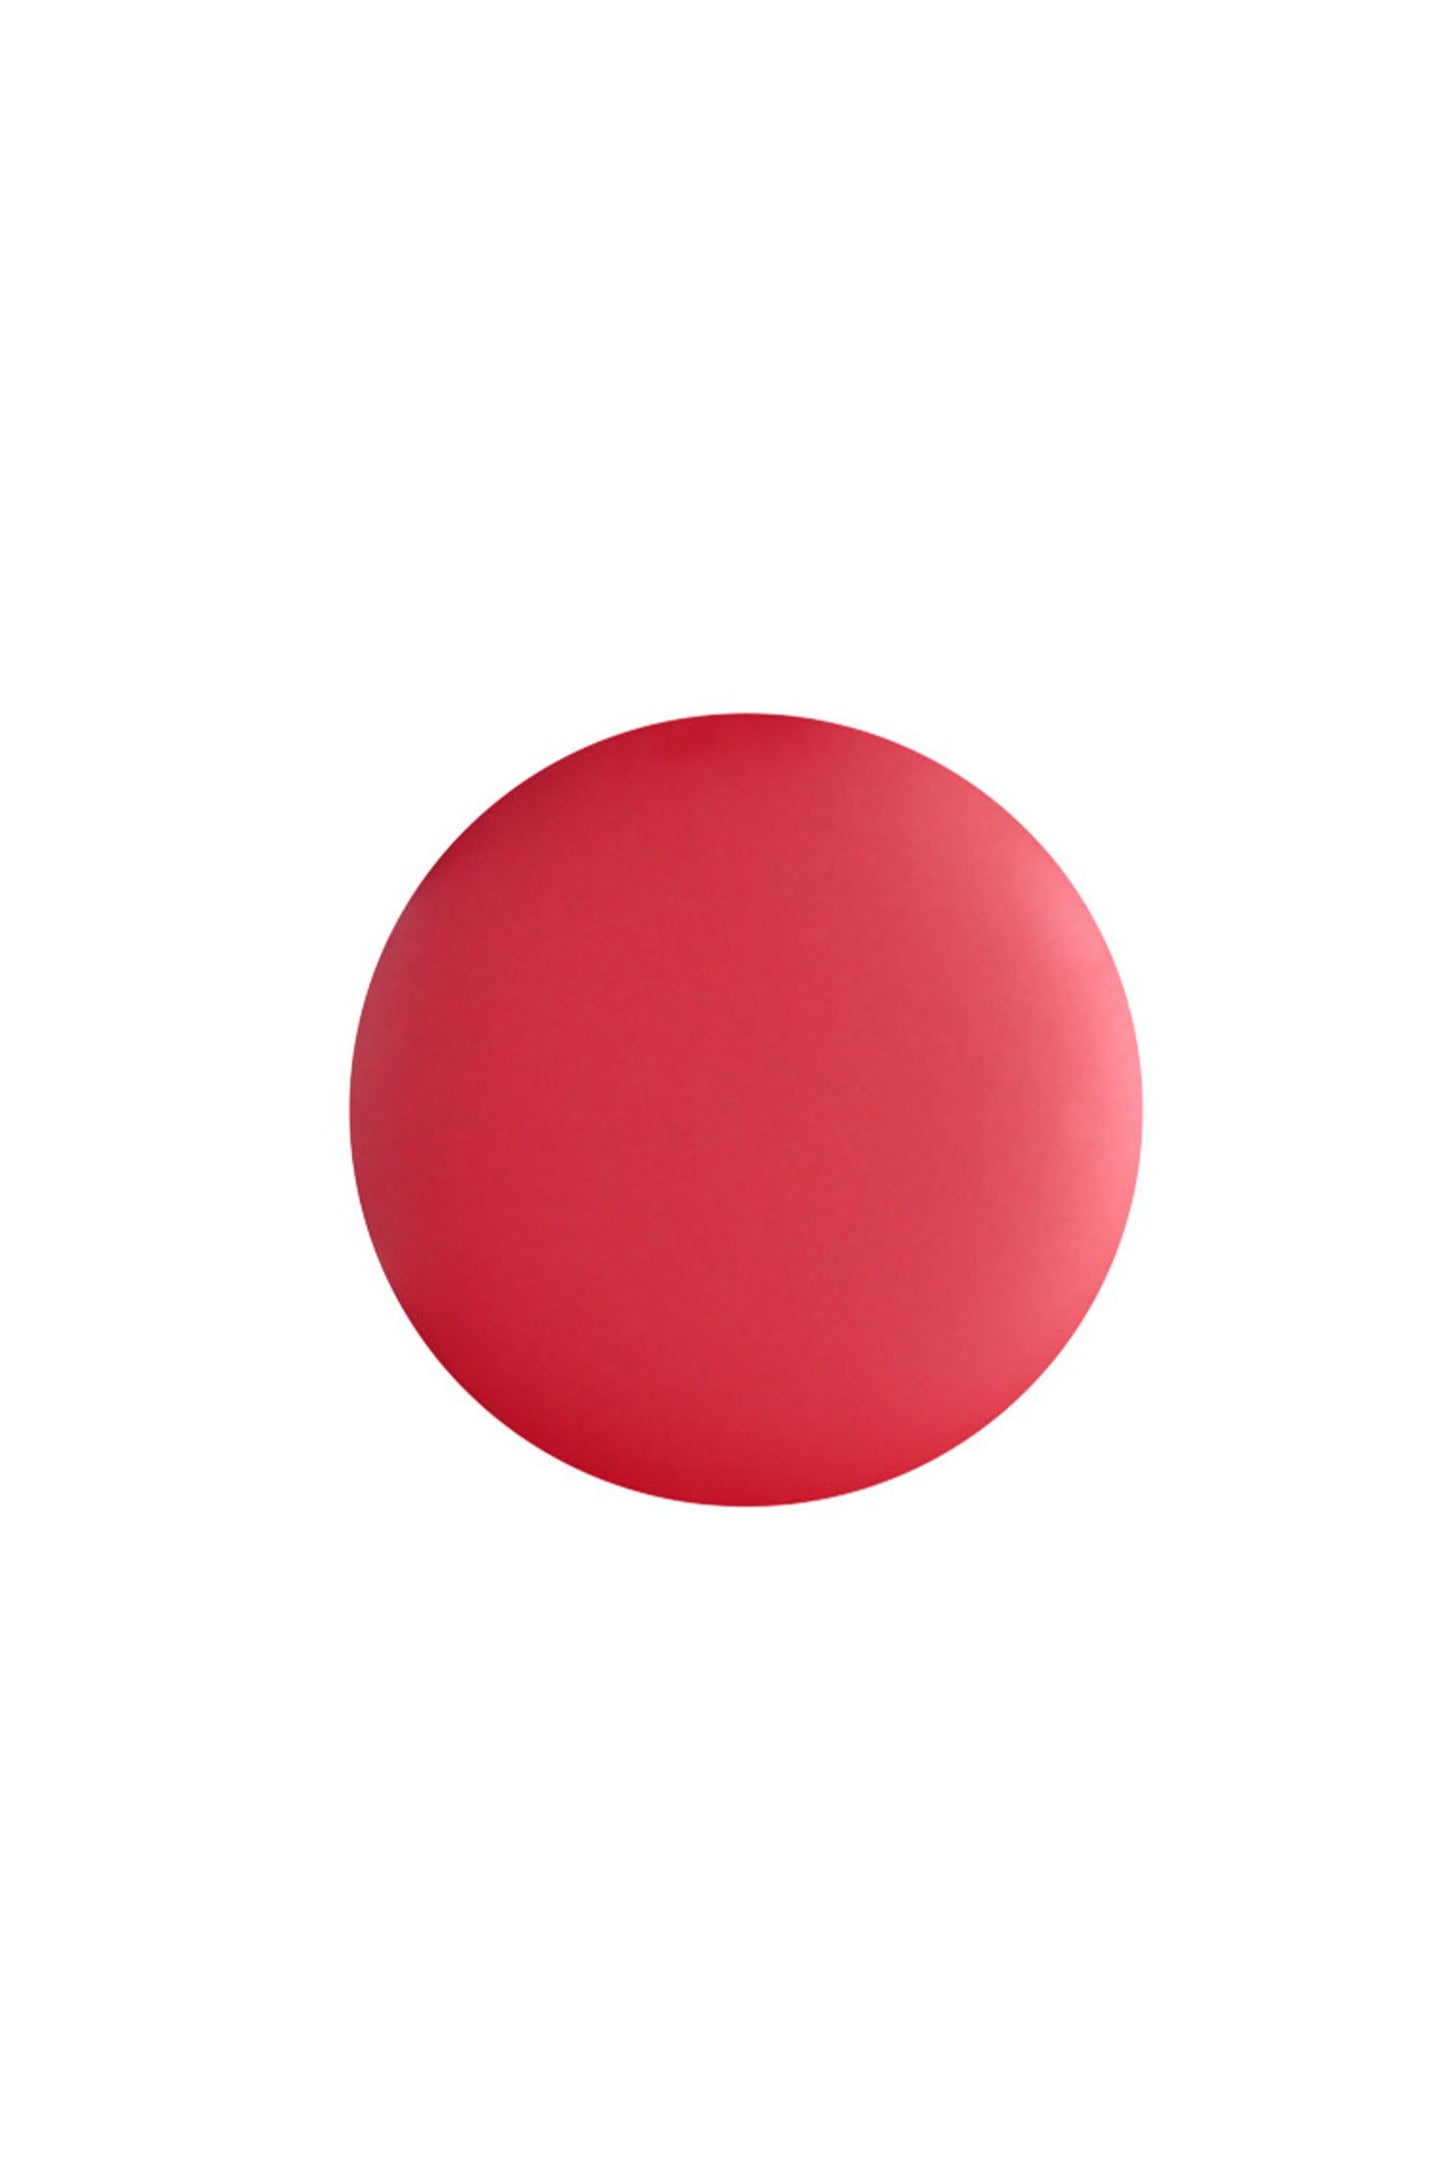 401 Magenta Red dot